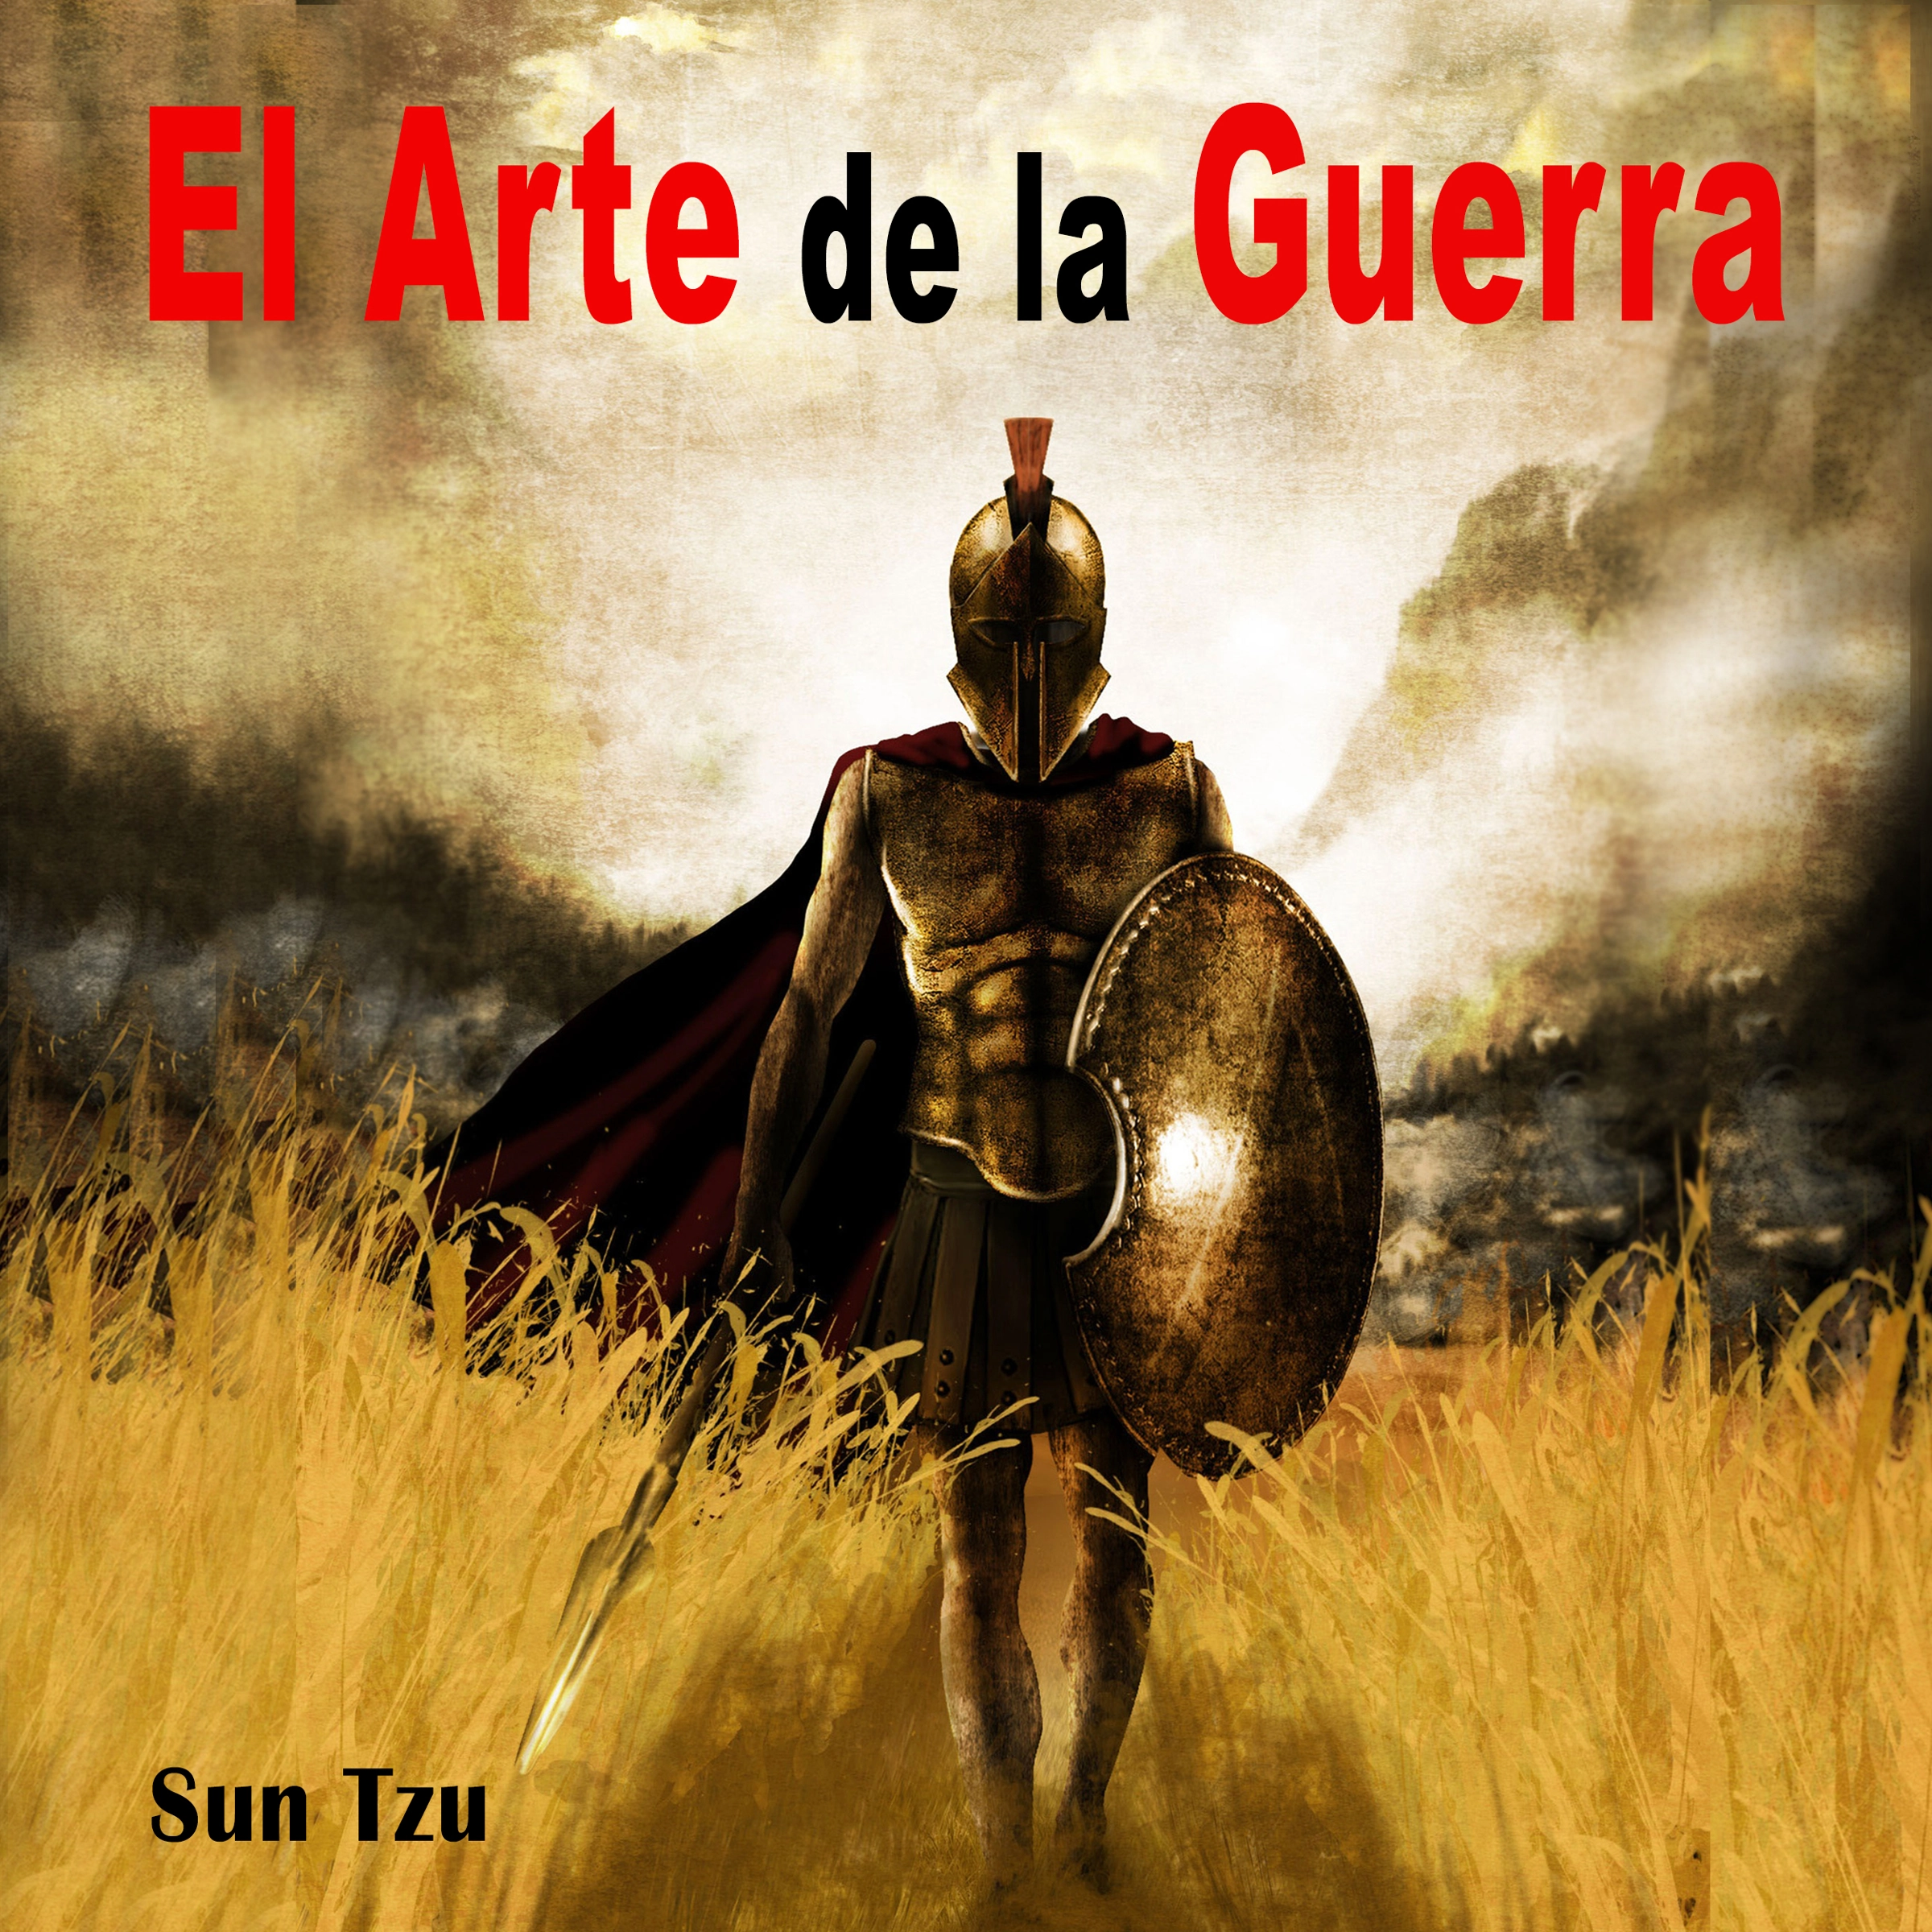 El Arte de la Guerra by Sun Tzu Audiobook